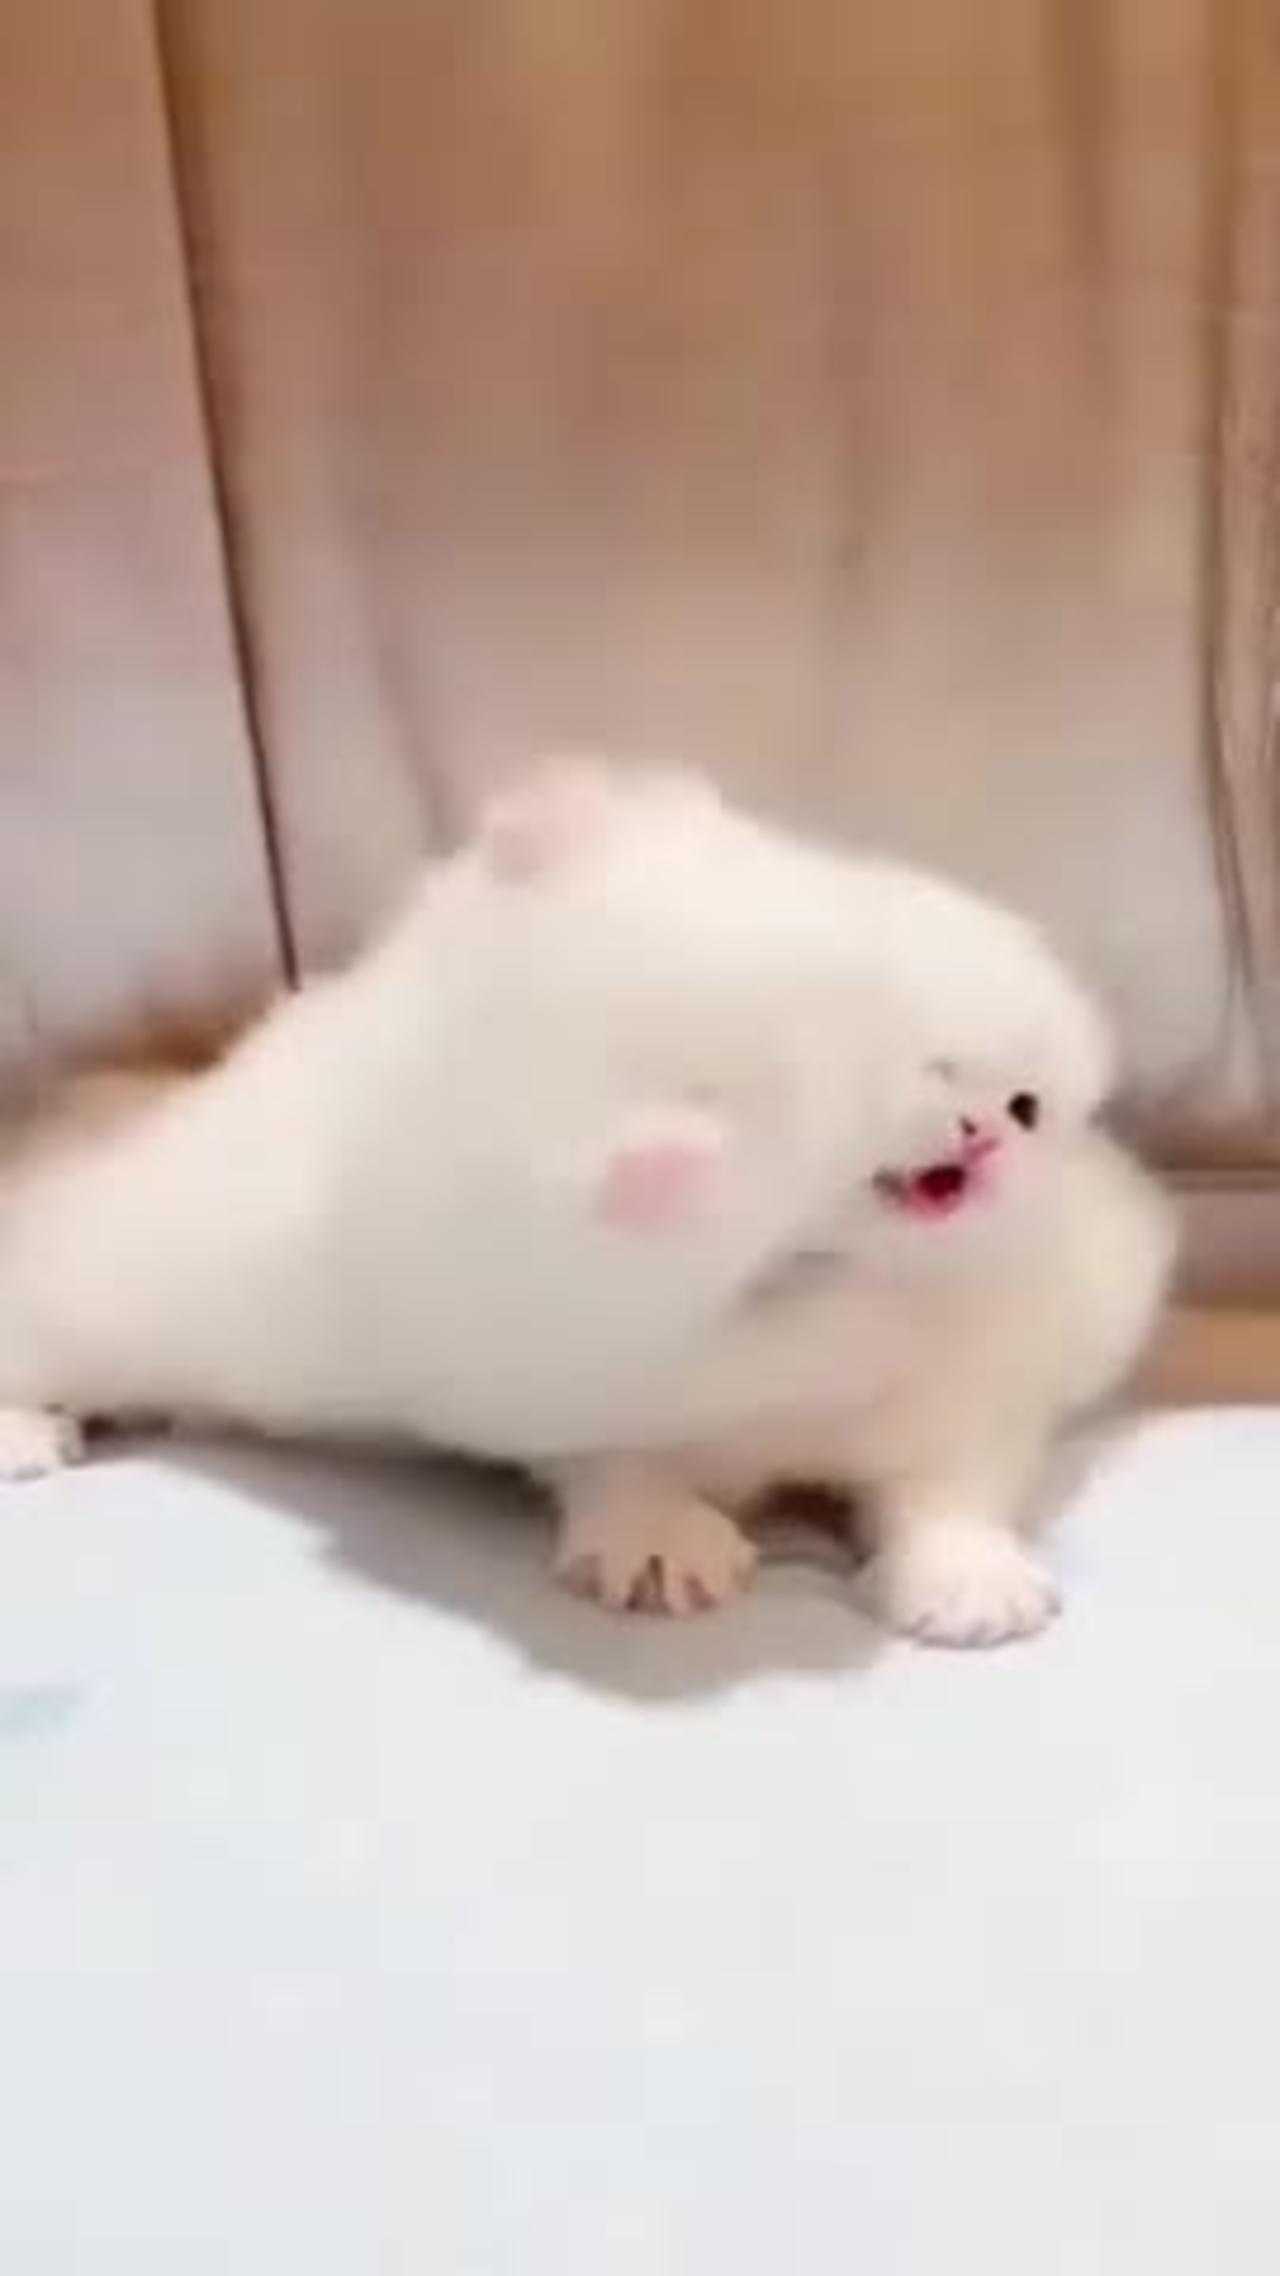 Cute puppy video 👌